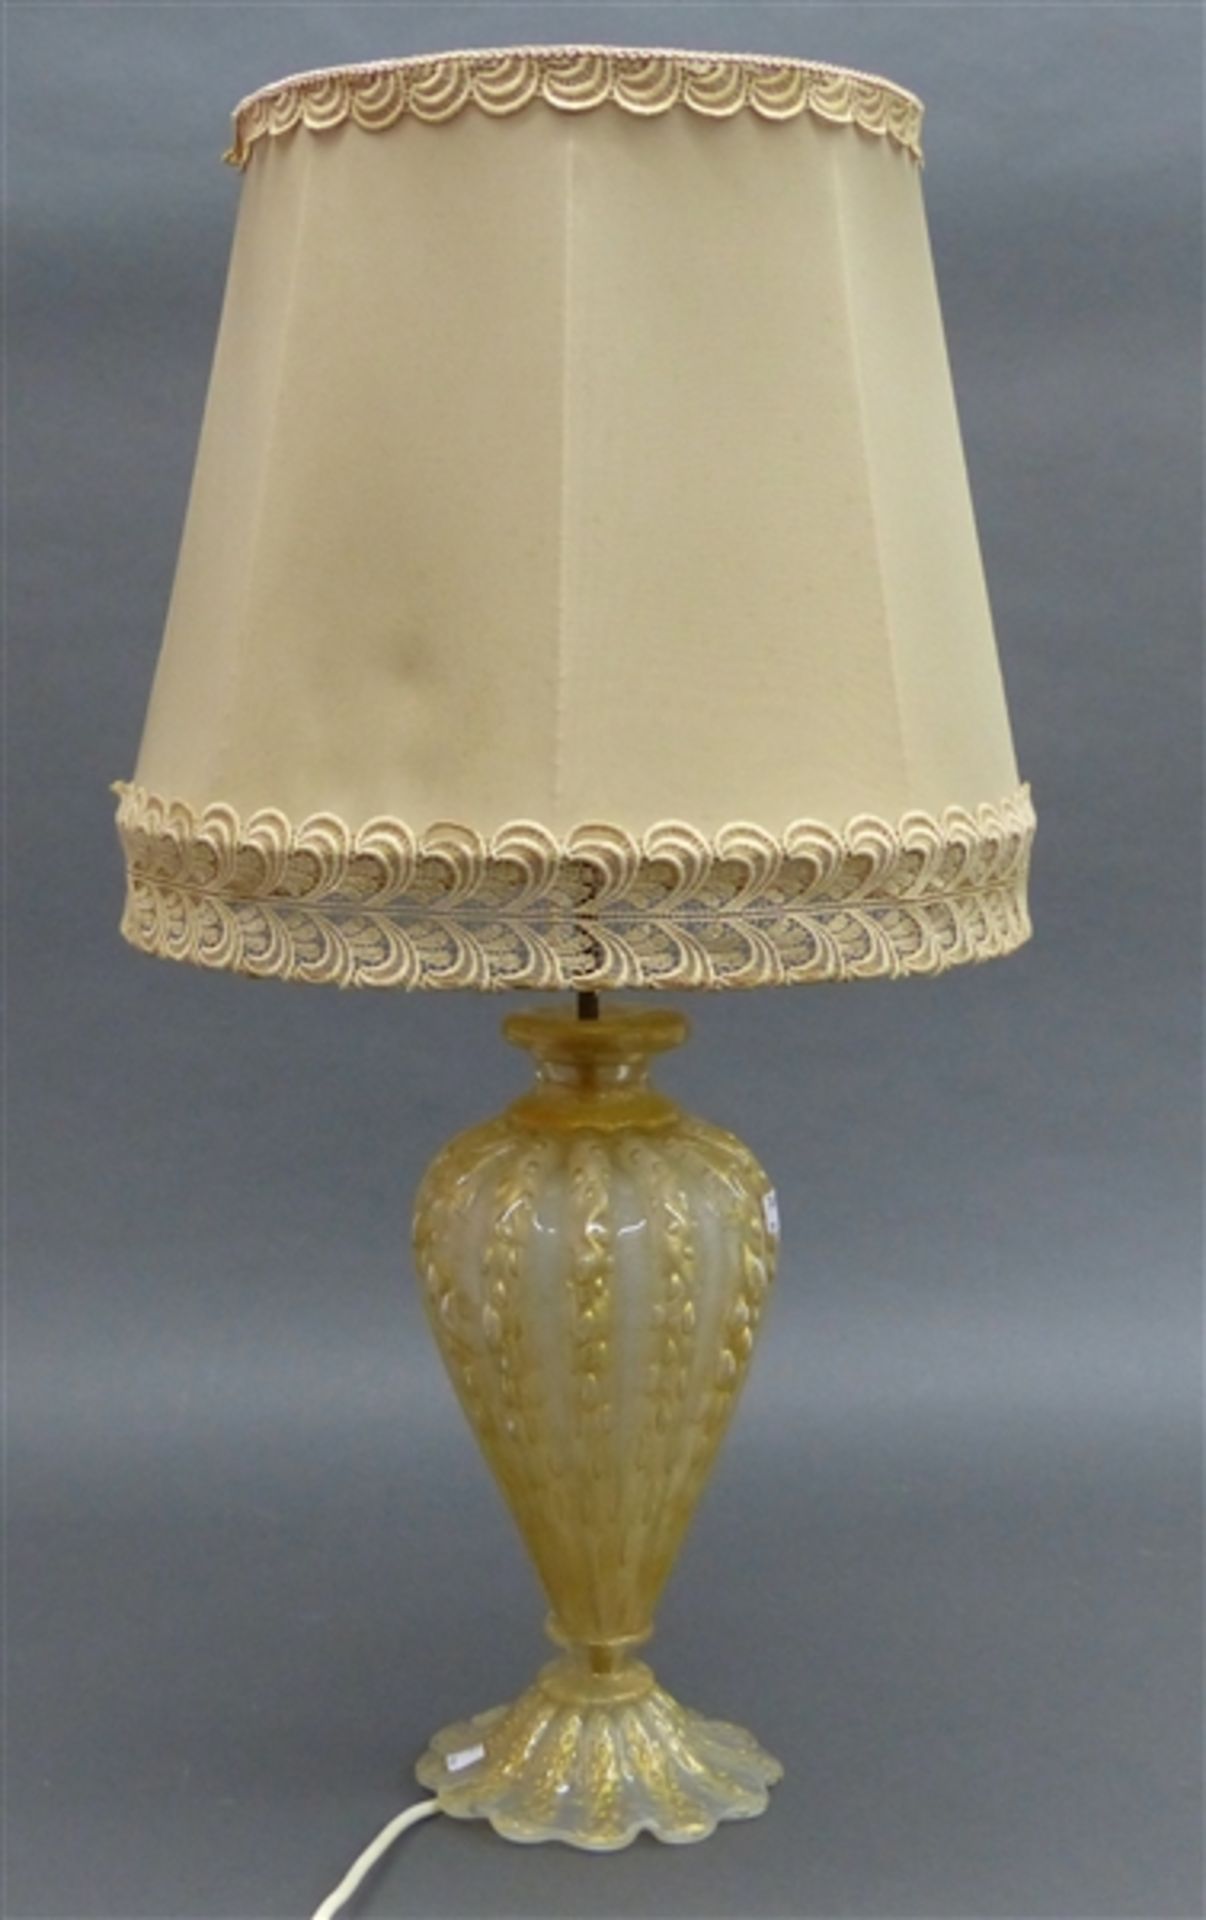 Muranolampe einflammig, Glasfaß, beige mit reichem Goldflitter, 20. Jh., elektrifiziert, h 66 cm,